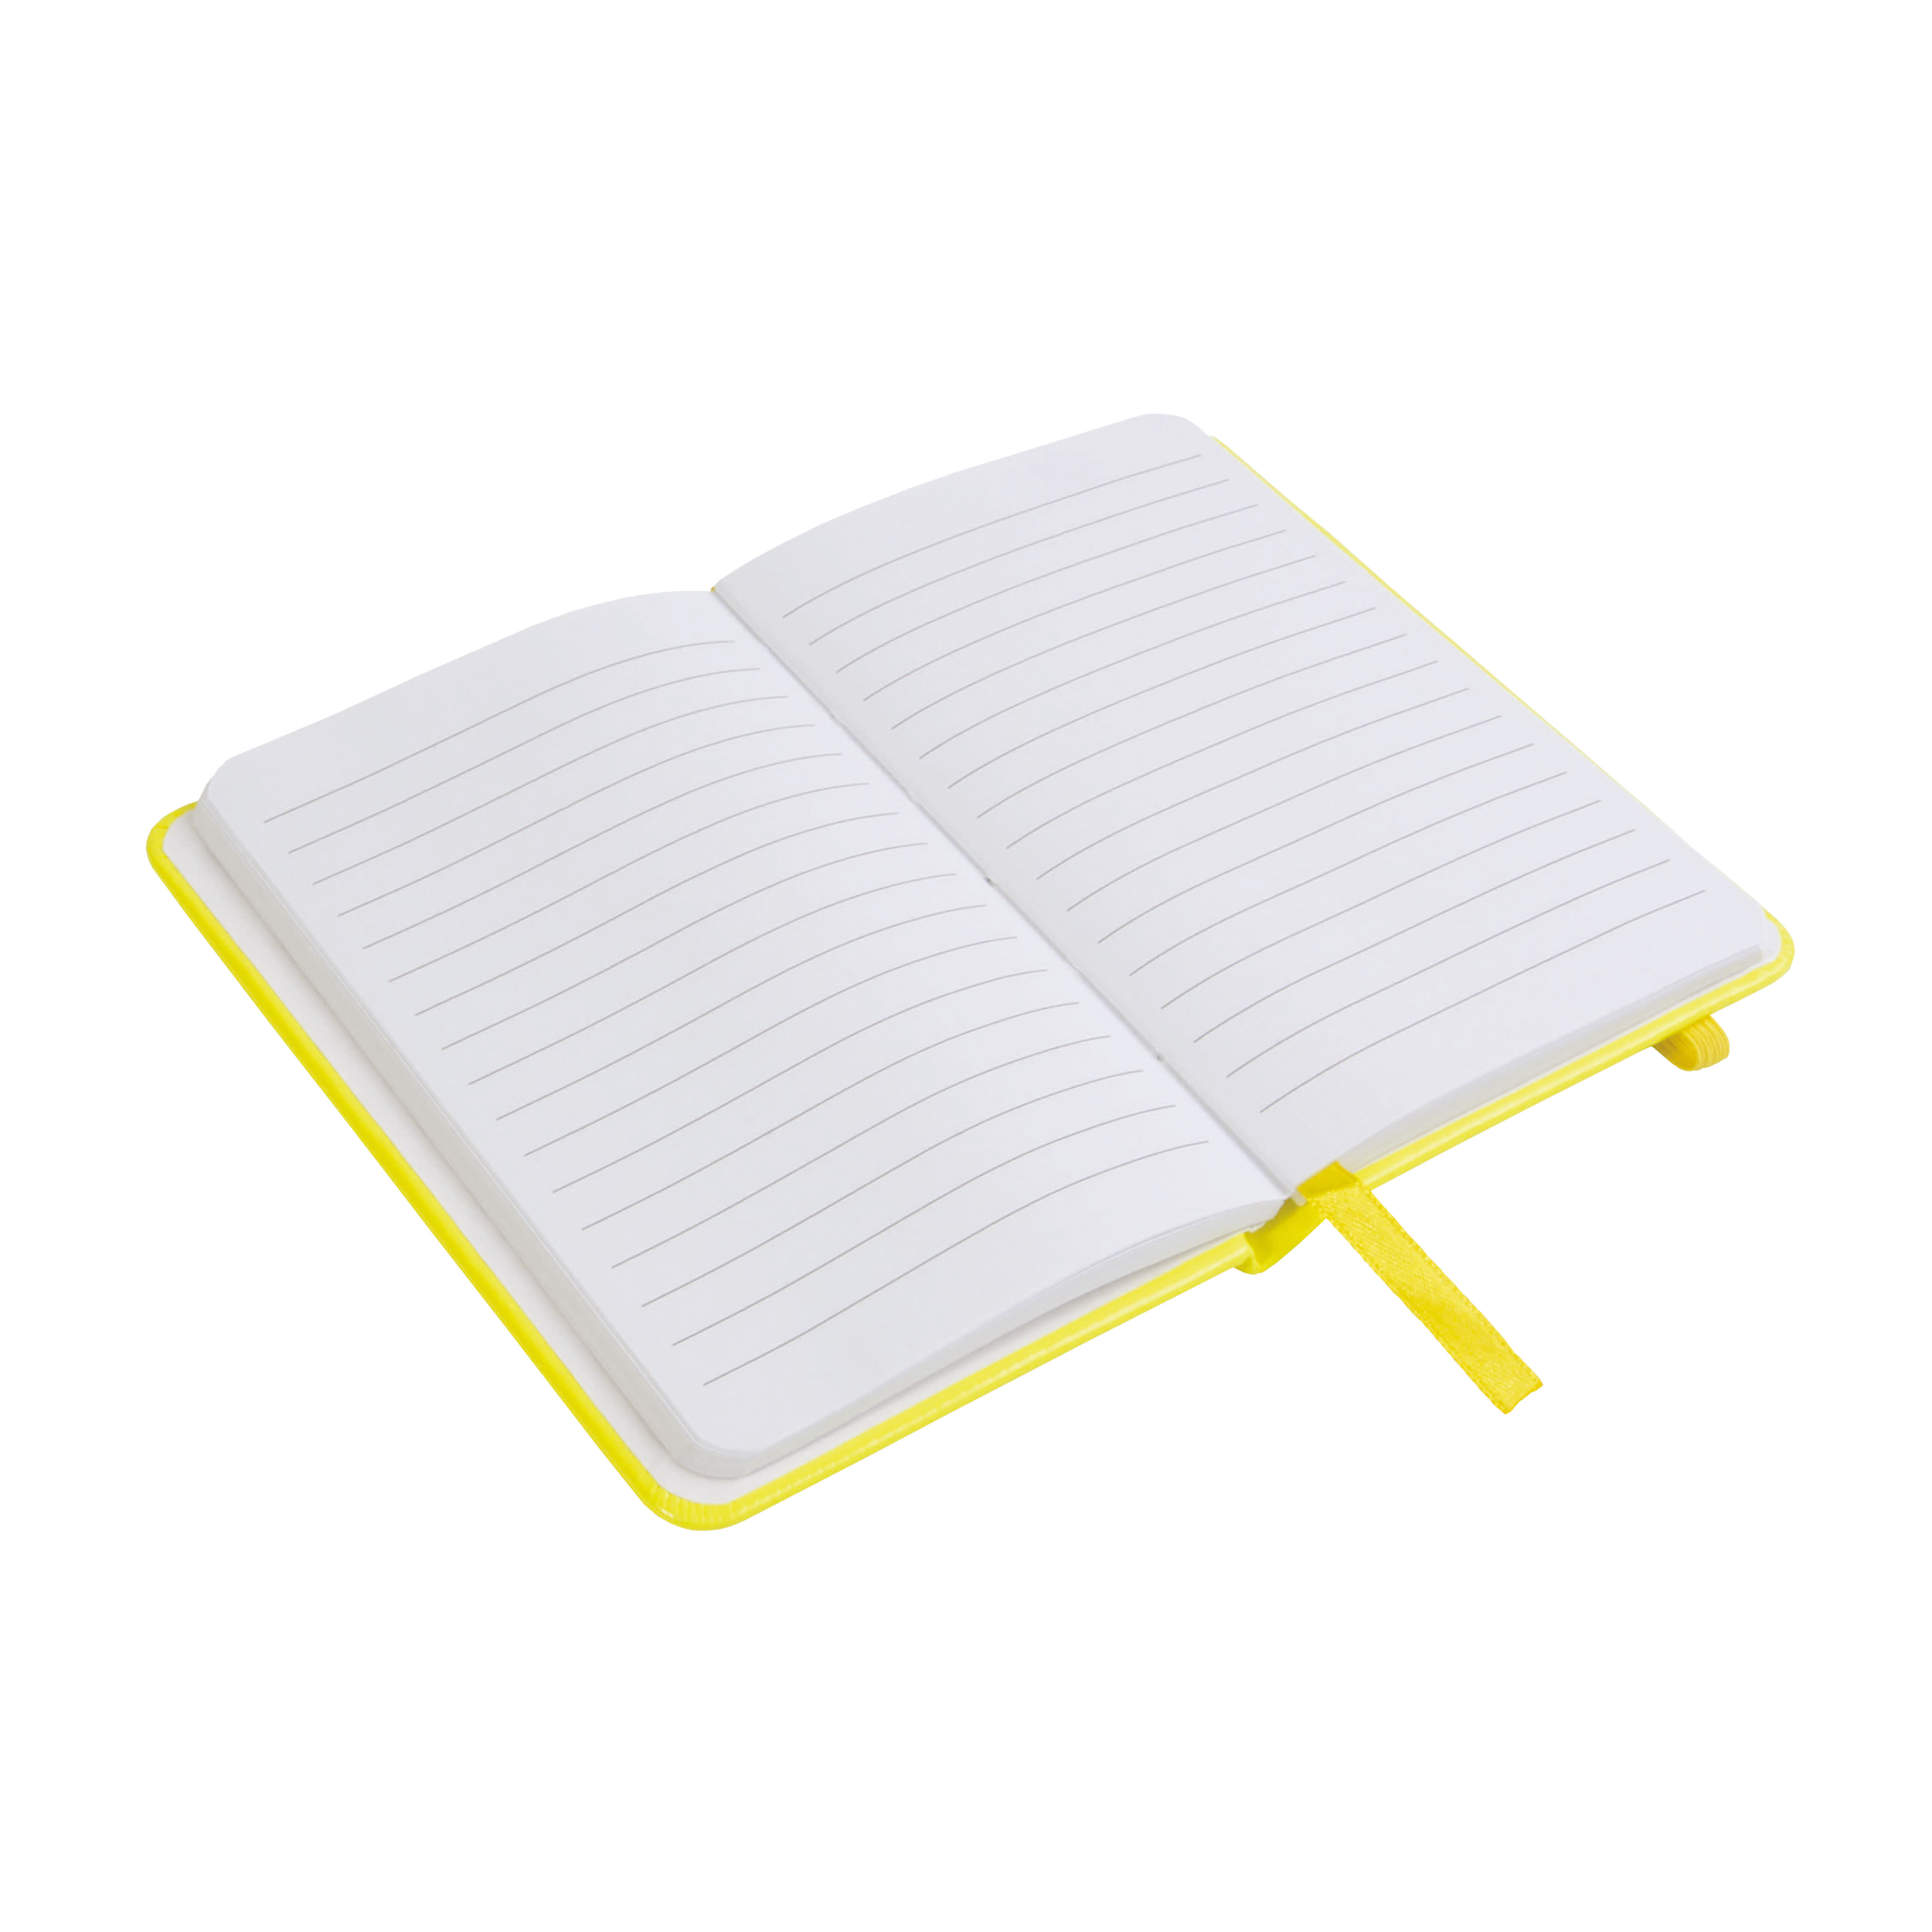 Notebook Quaderno per Appunti con Elastico e Porta Telefono